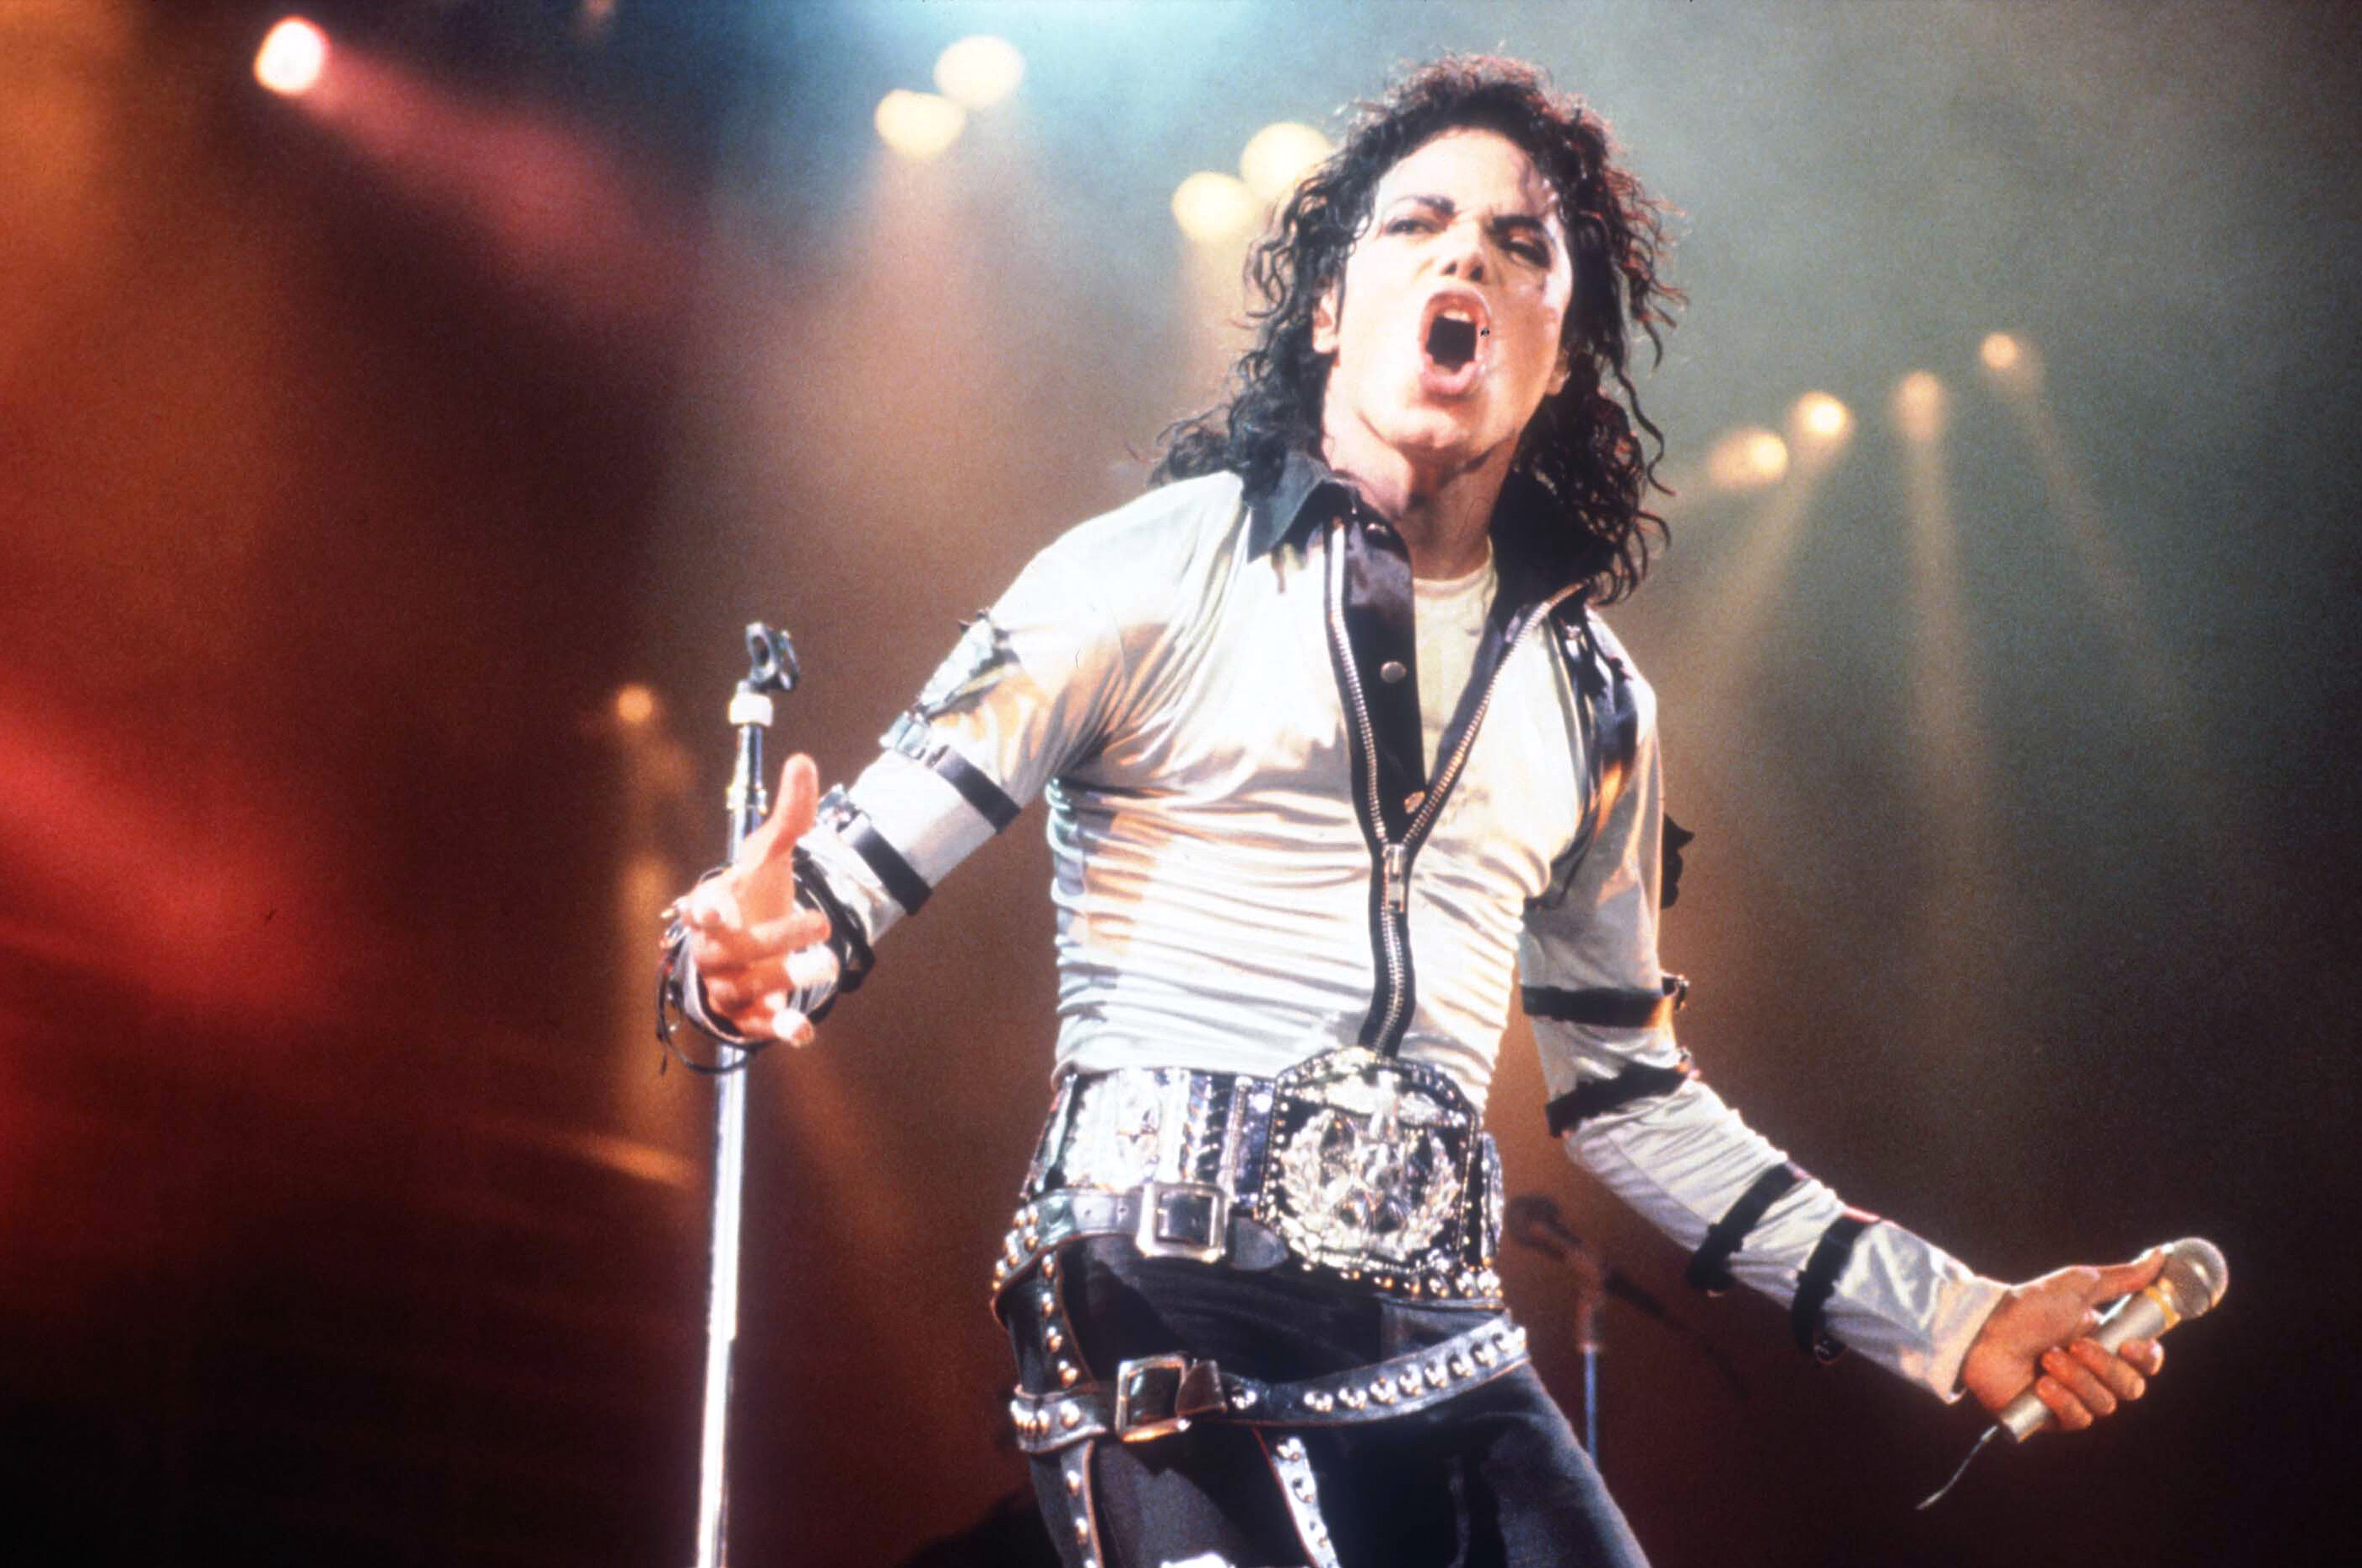 Michael Jackson In Concert